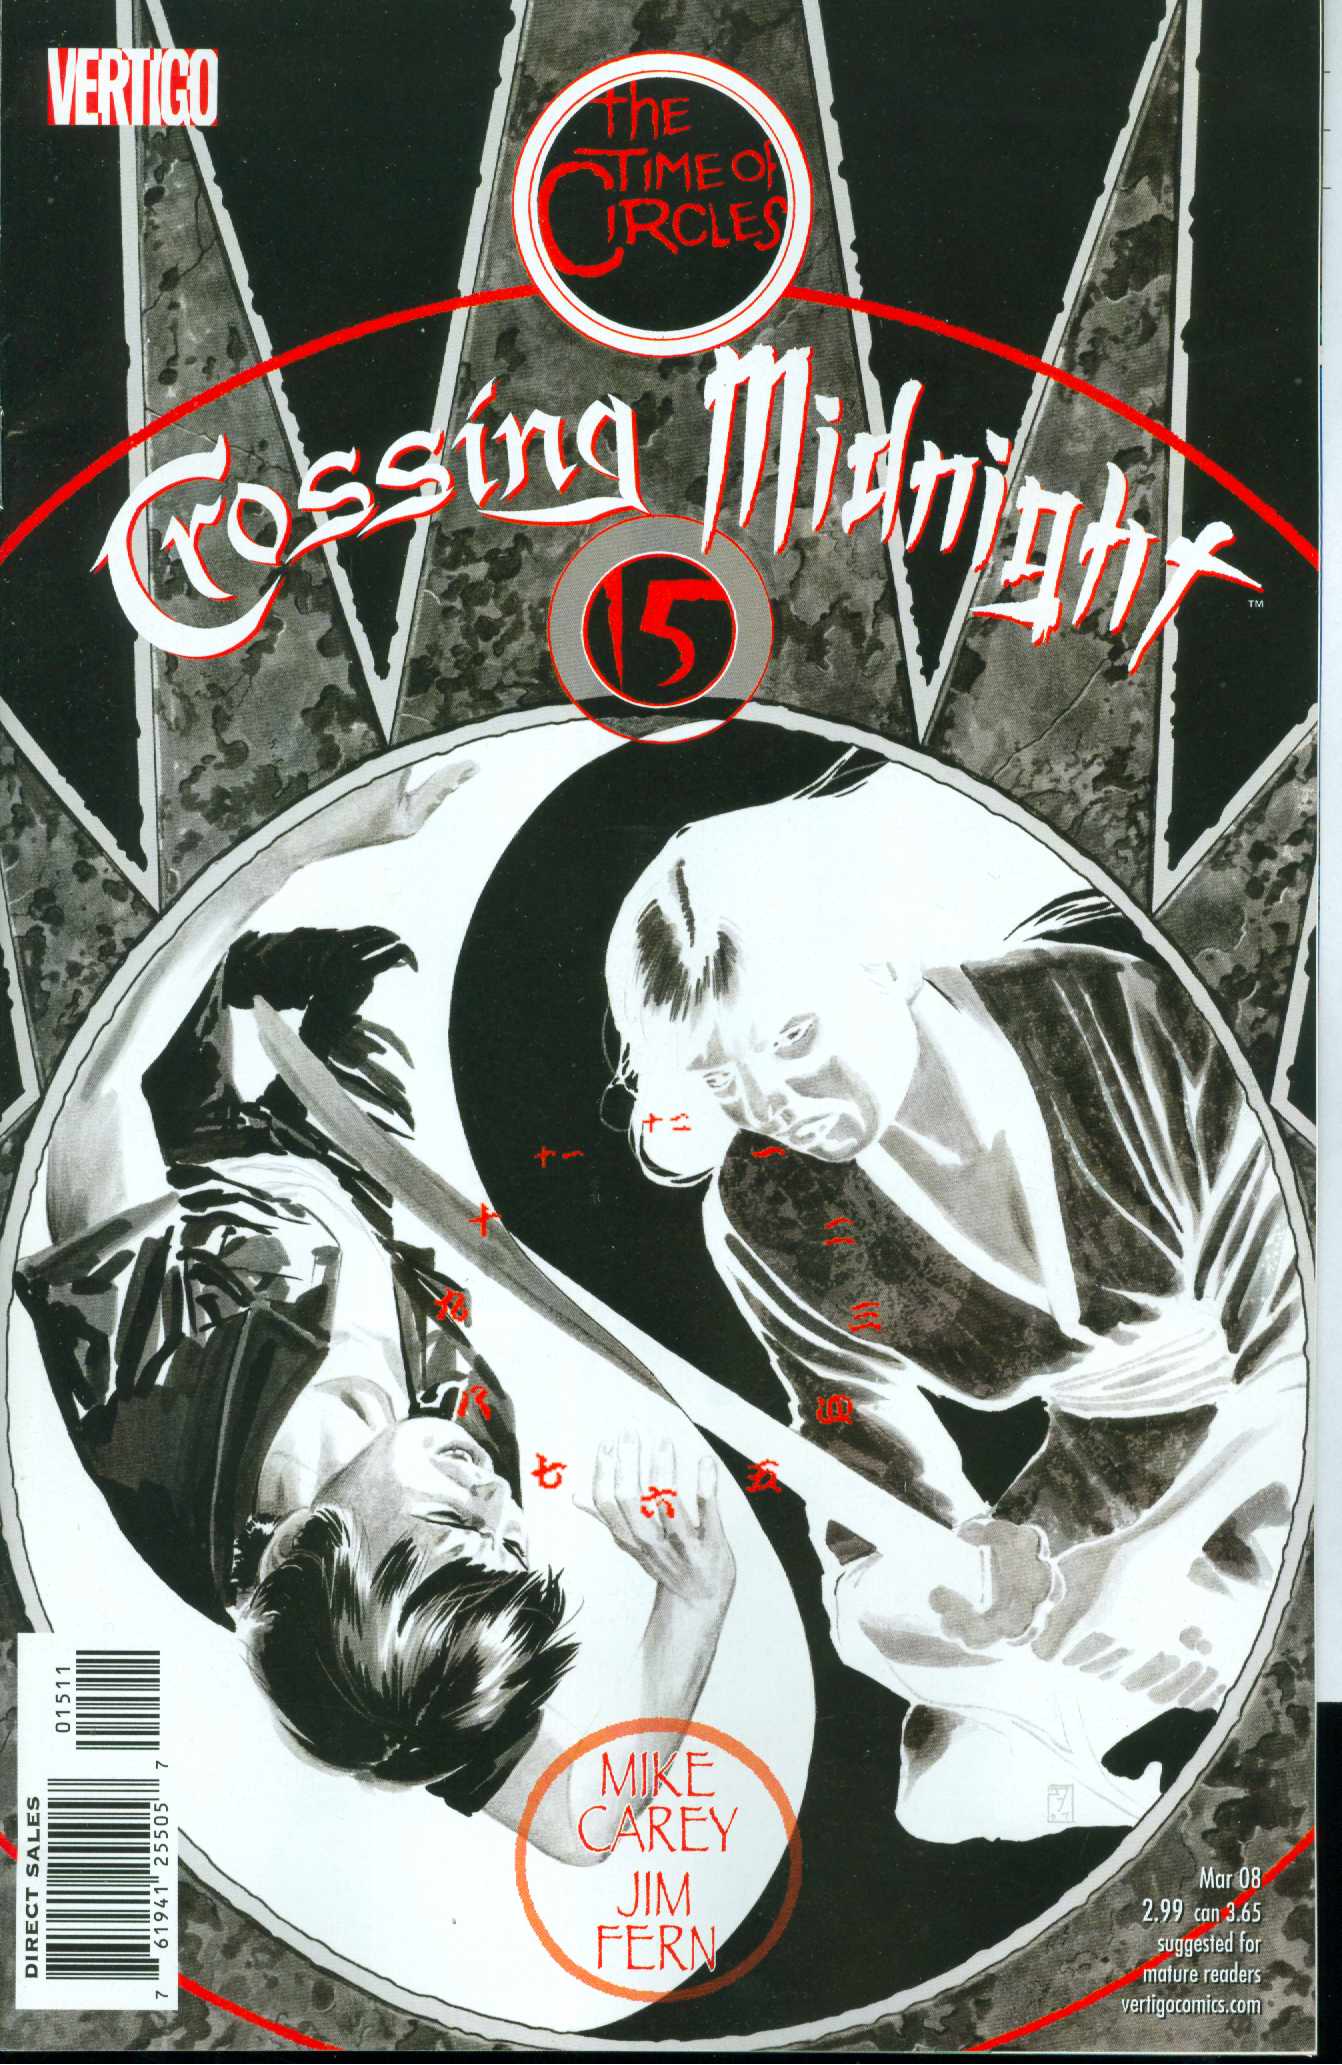 Crossing Midnight #15